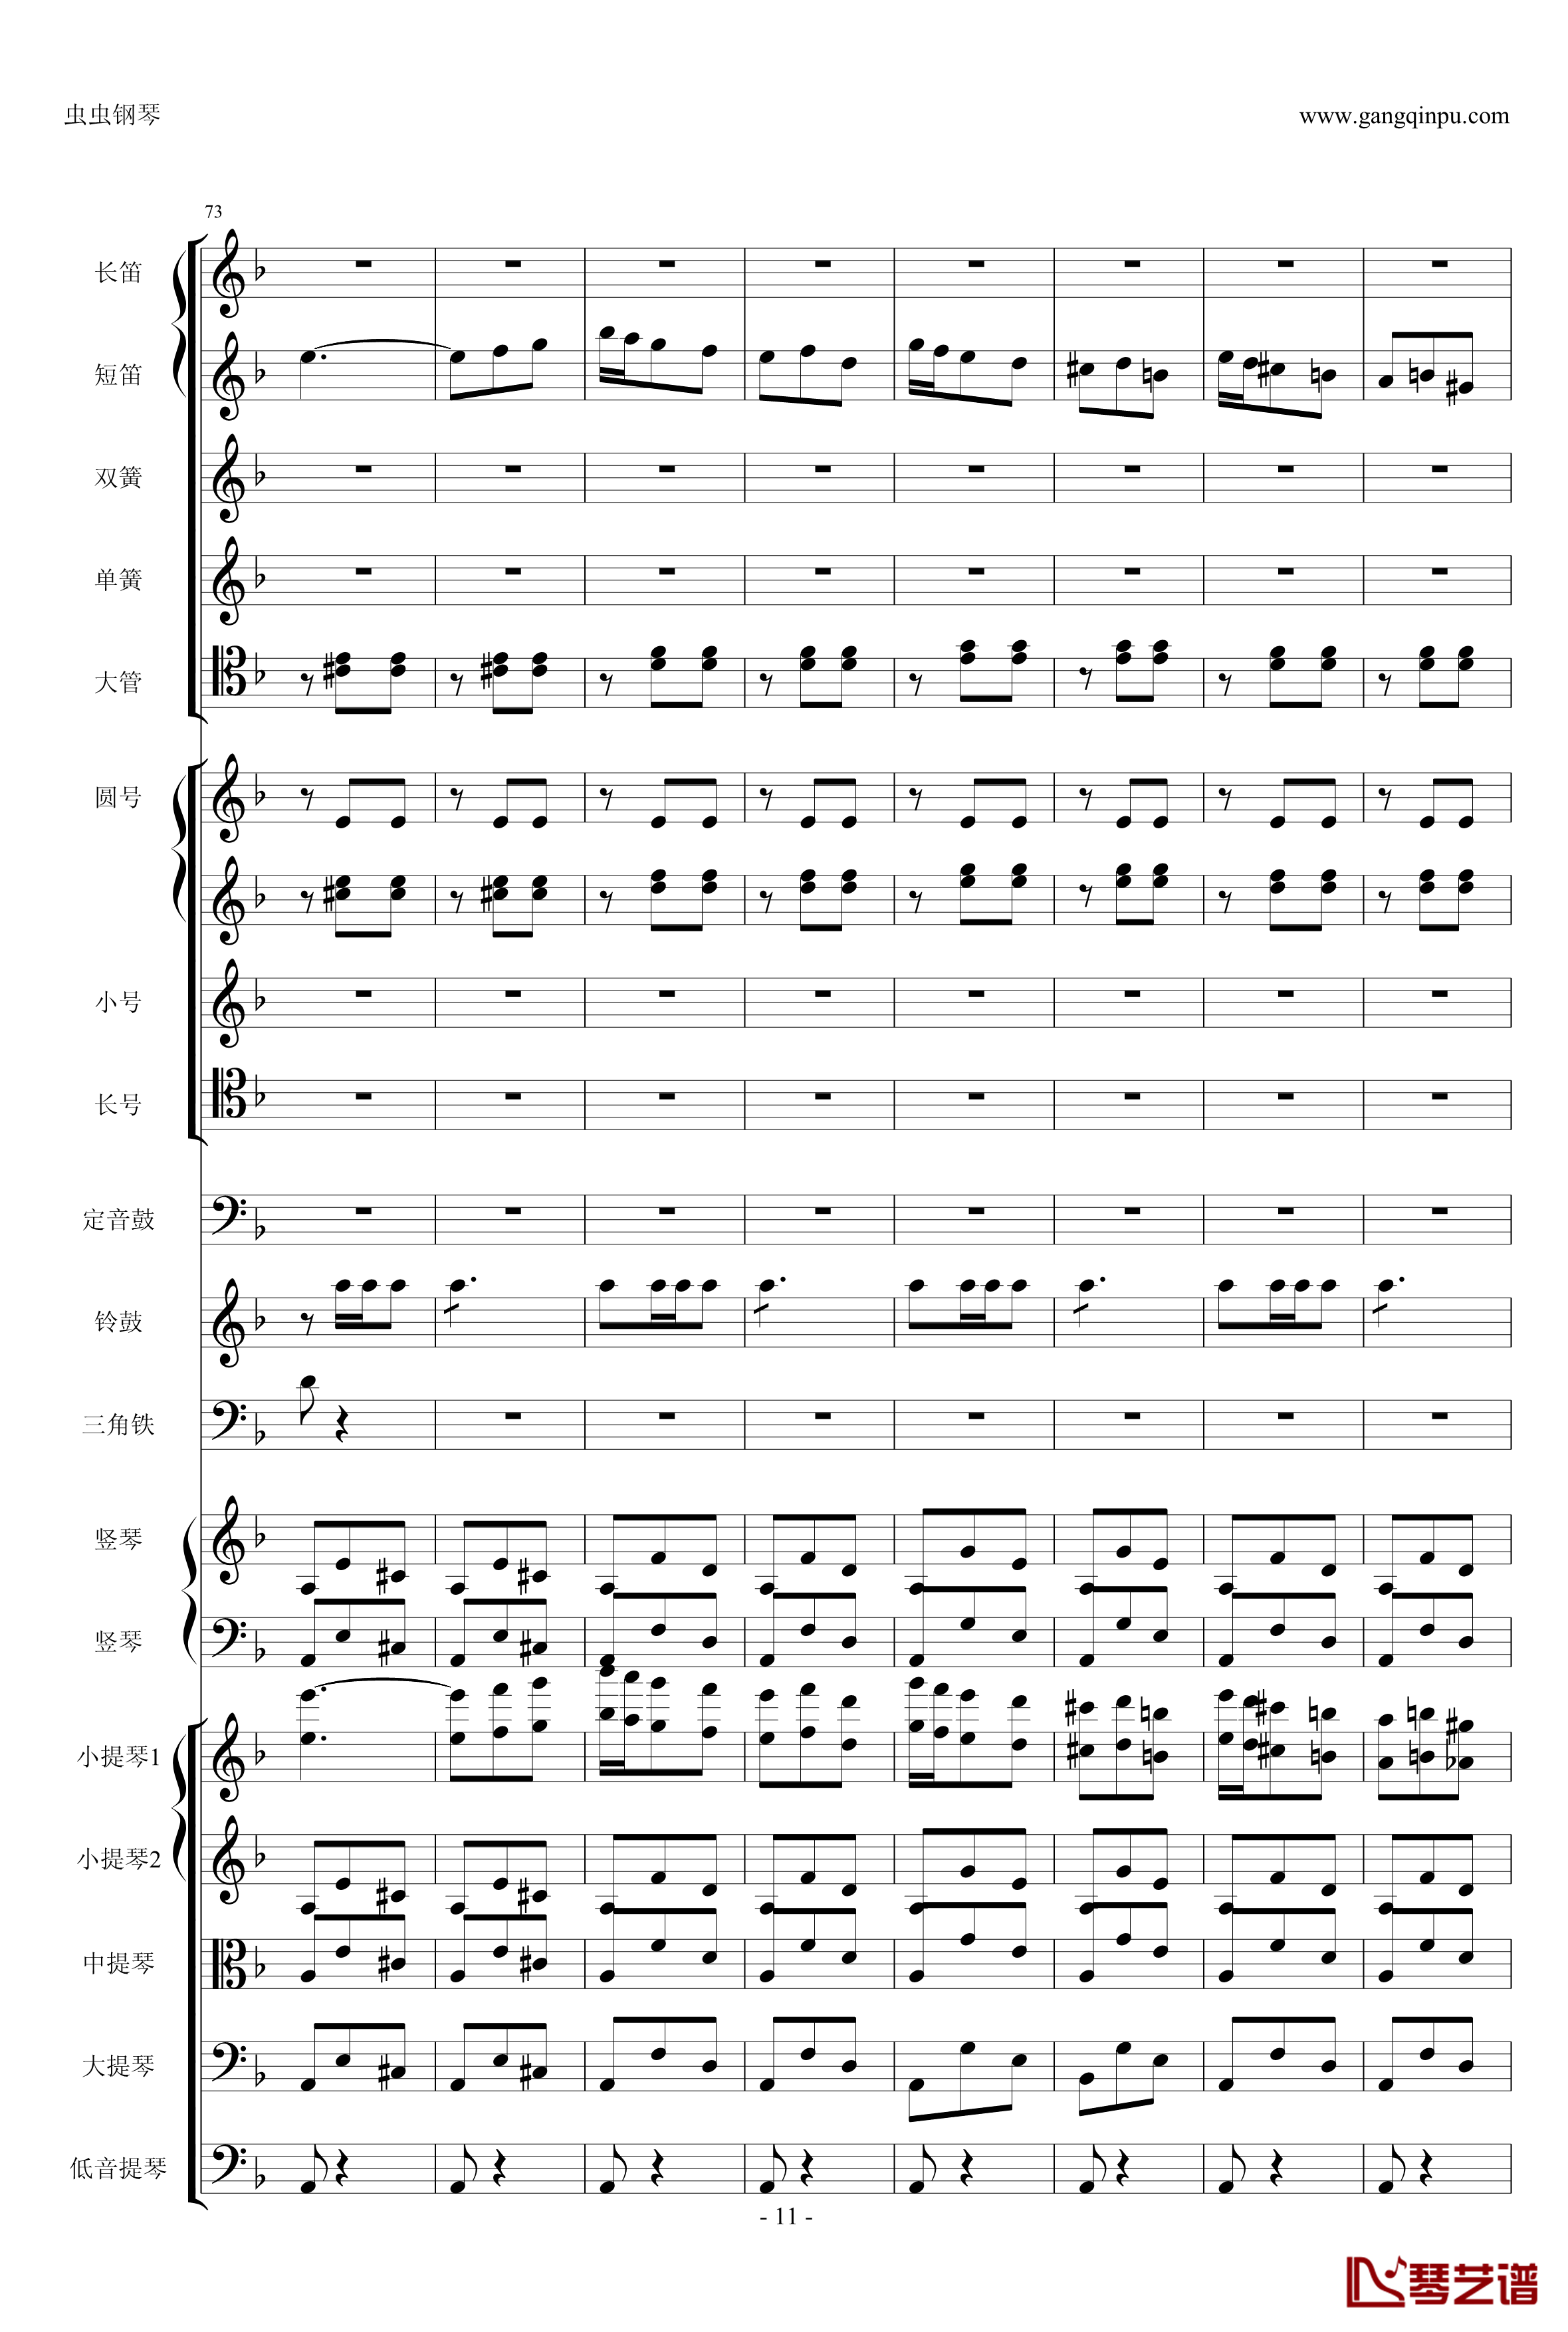 歌剧卡门选段钢琴谱-比才-Bizet- 第四幕间奏曲